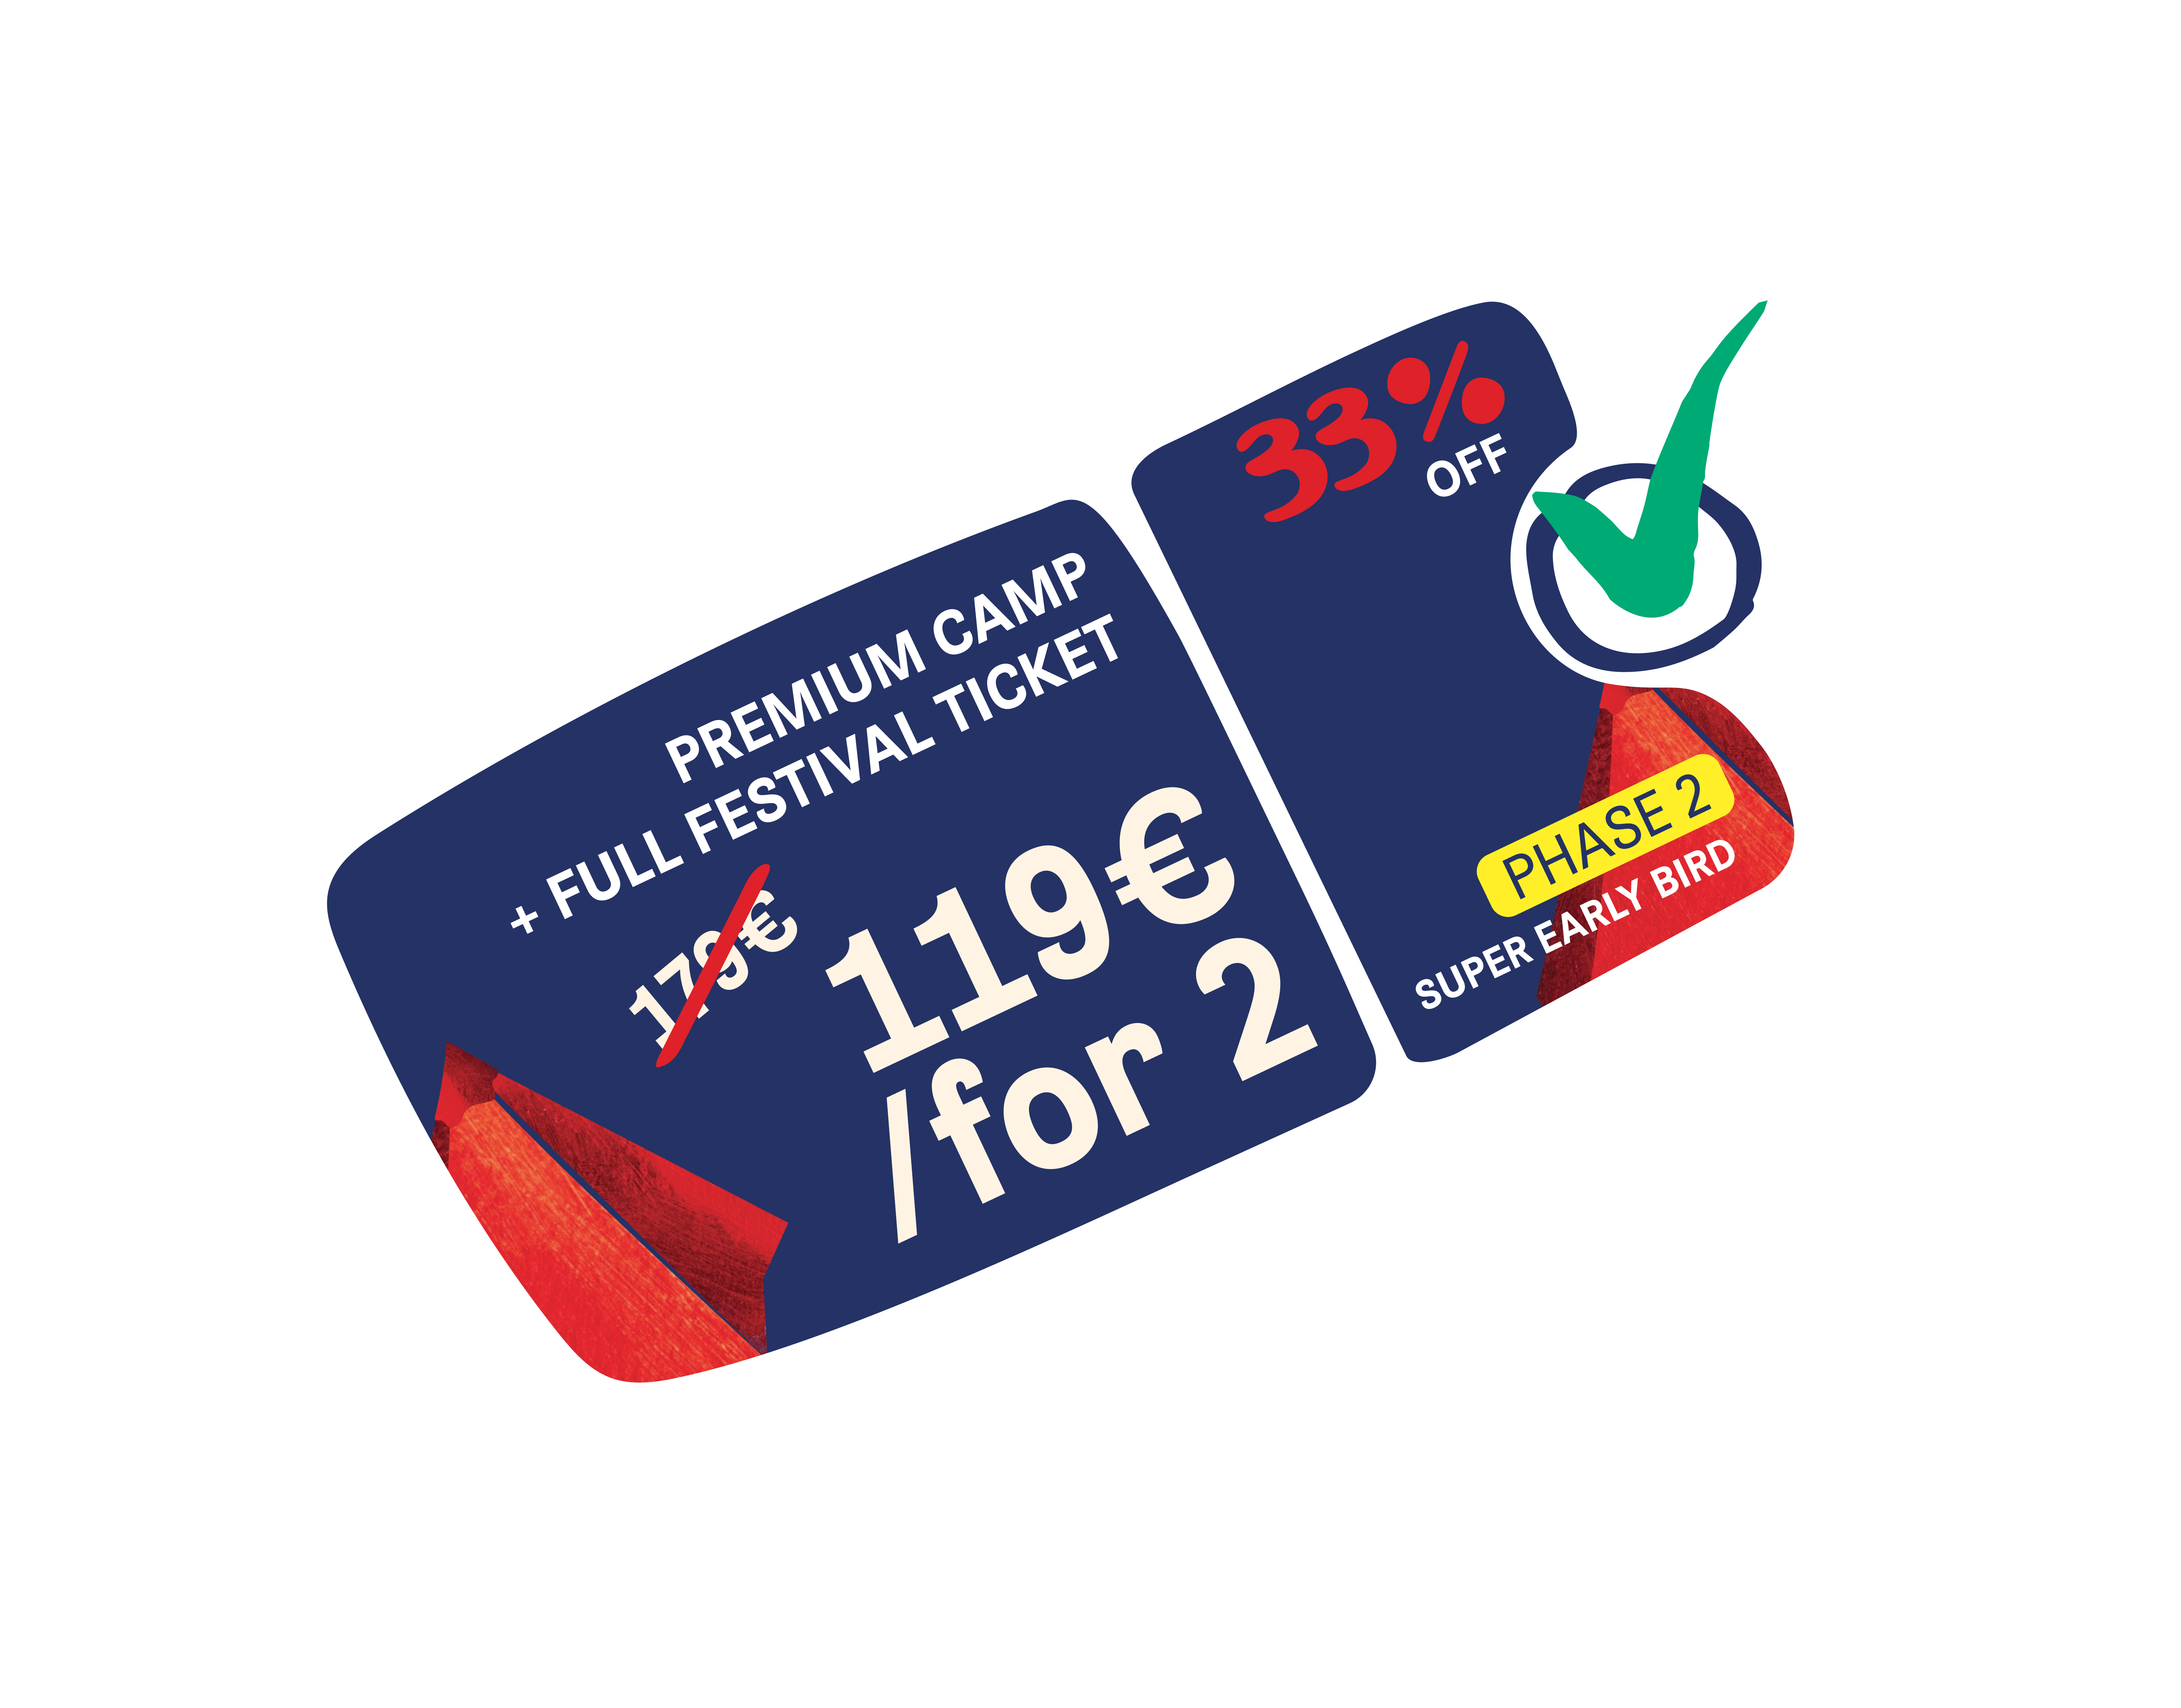 Premium Camping + Full Festival Ticket